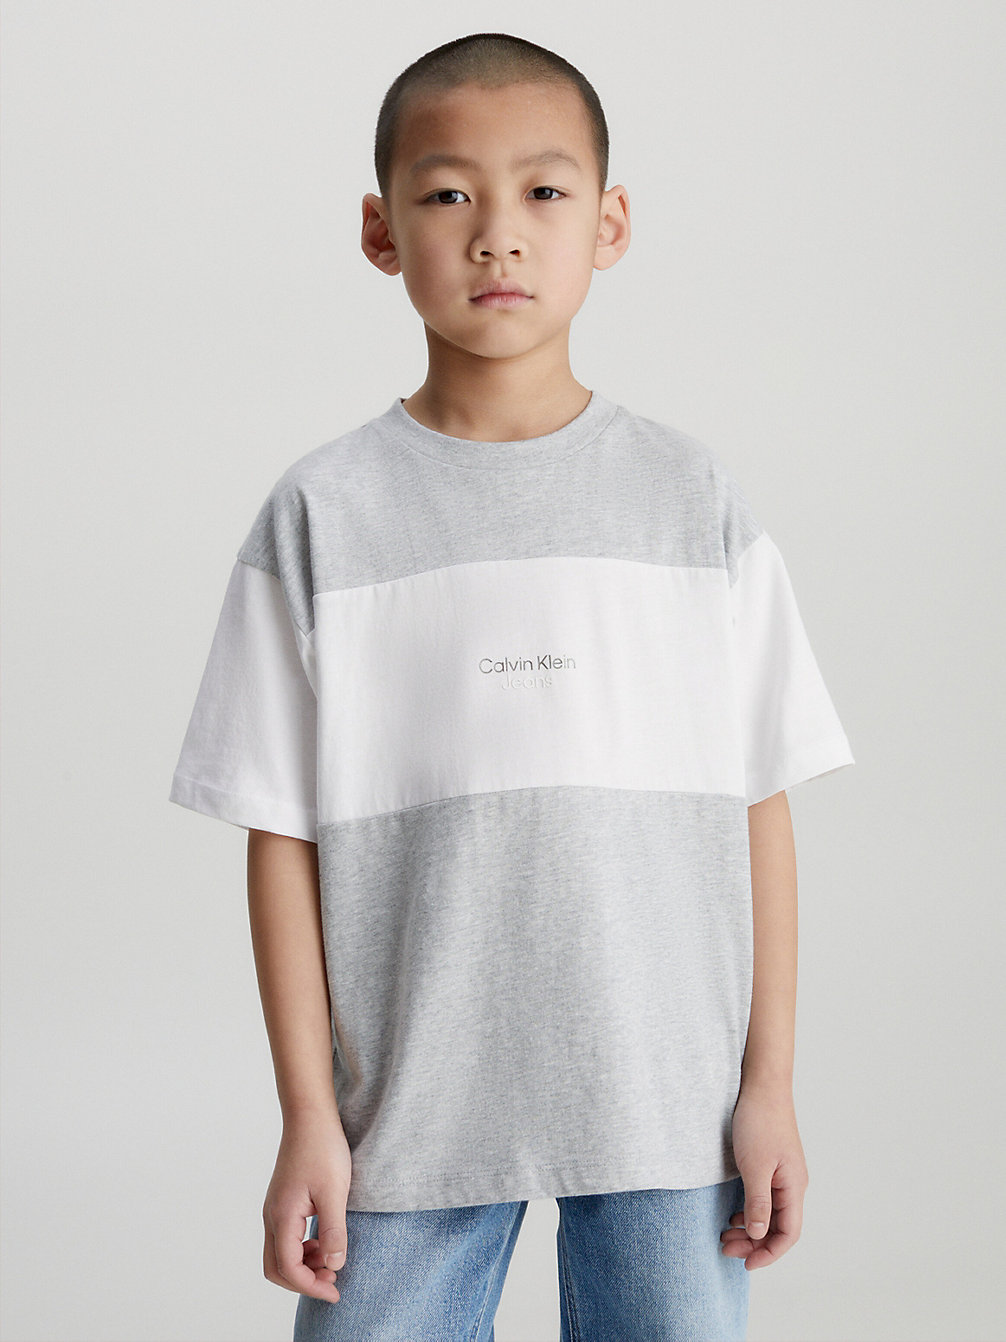 LIGHT GREY HEATHER / WHITE Logo-T-Shirt In Blockfarben-Design undefined Jungen Calvin Klein